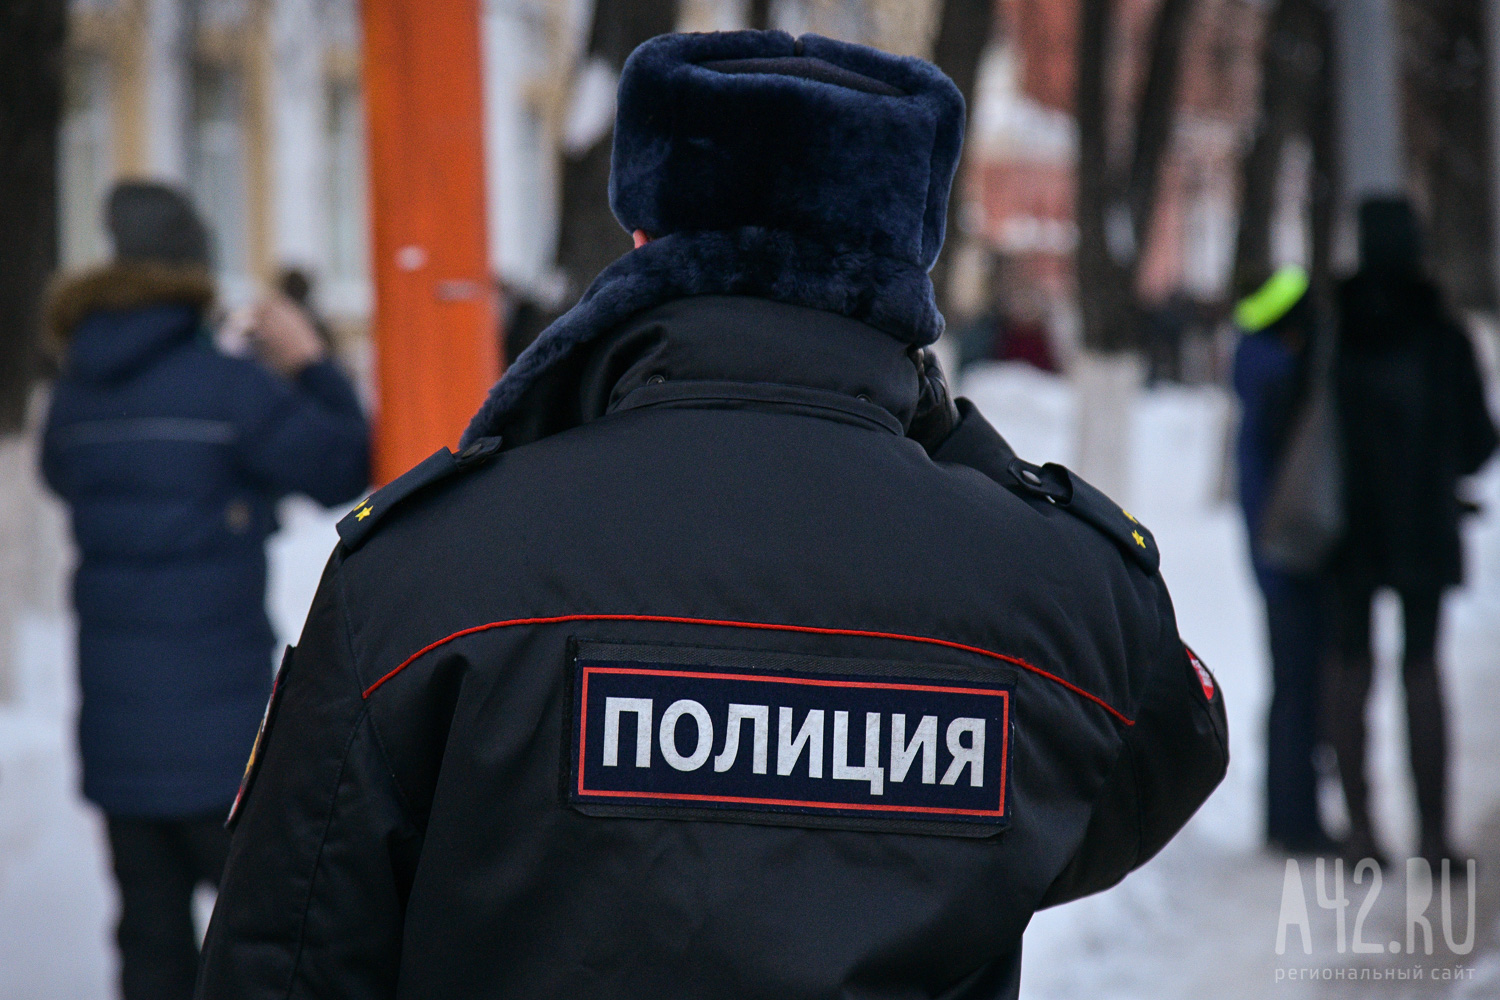 Молодая кемеровчанка отдала мошенникам кредитные 700 тысяч рублей